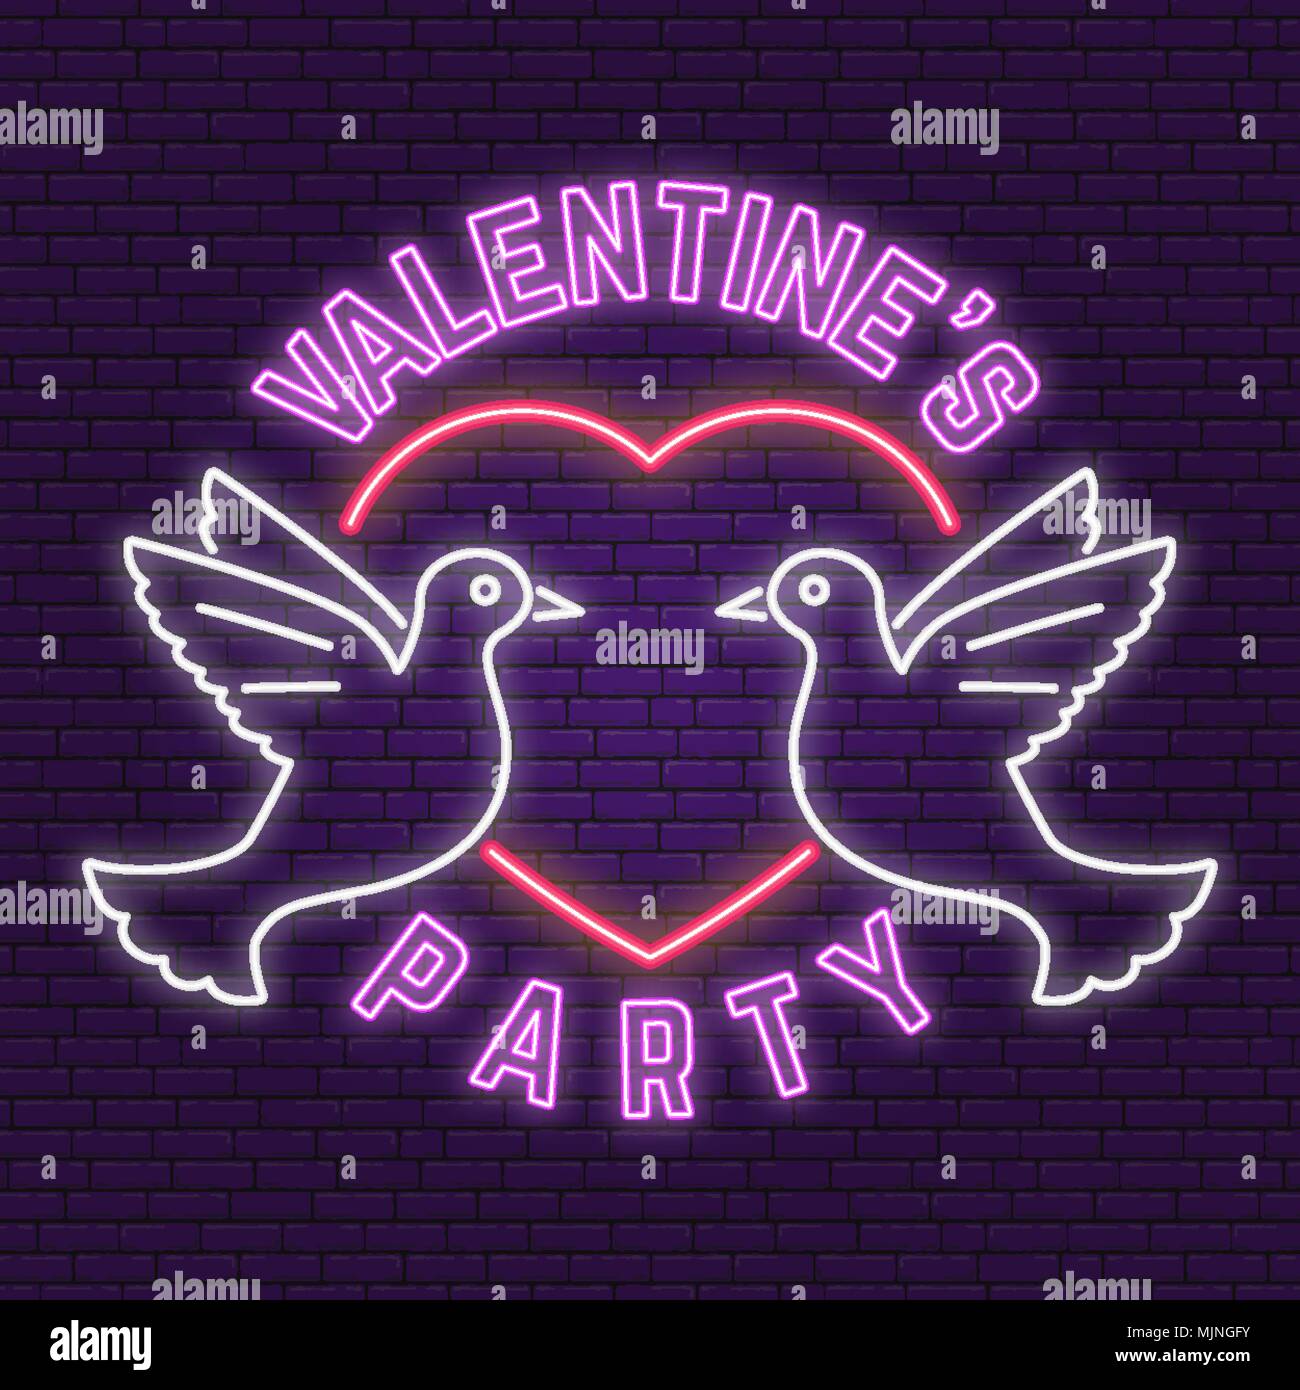 San Valentino festa s. Insegna al neon, banner per il giorno di San Valentino festeggiare. Illustrazione Vettoriale. Illustrazione Vettoriale